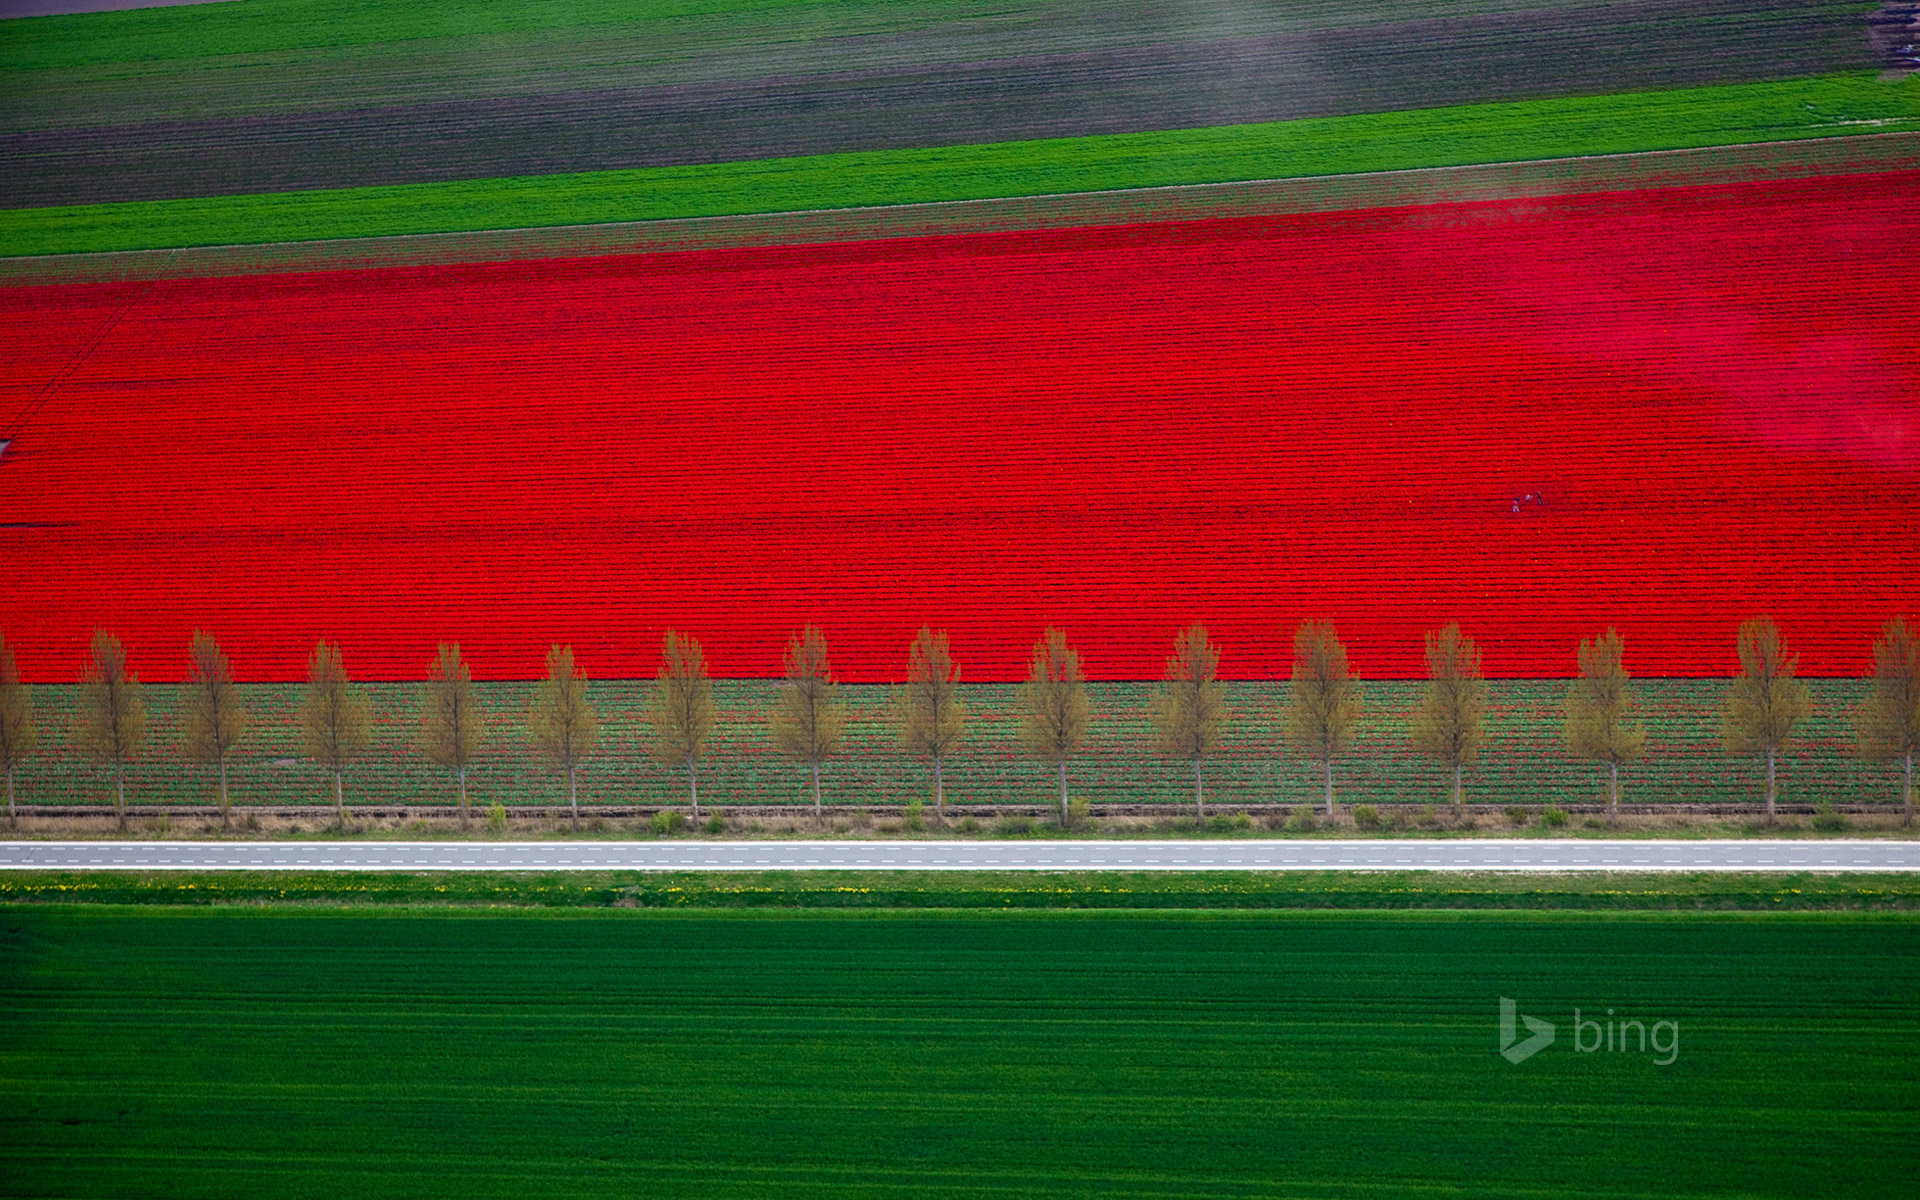 Tulip fields in Noordoostpolder, Netherlands